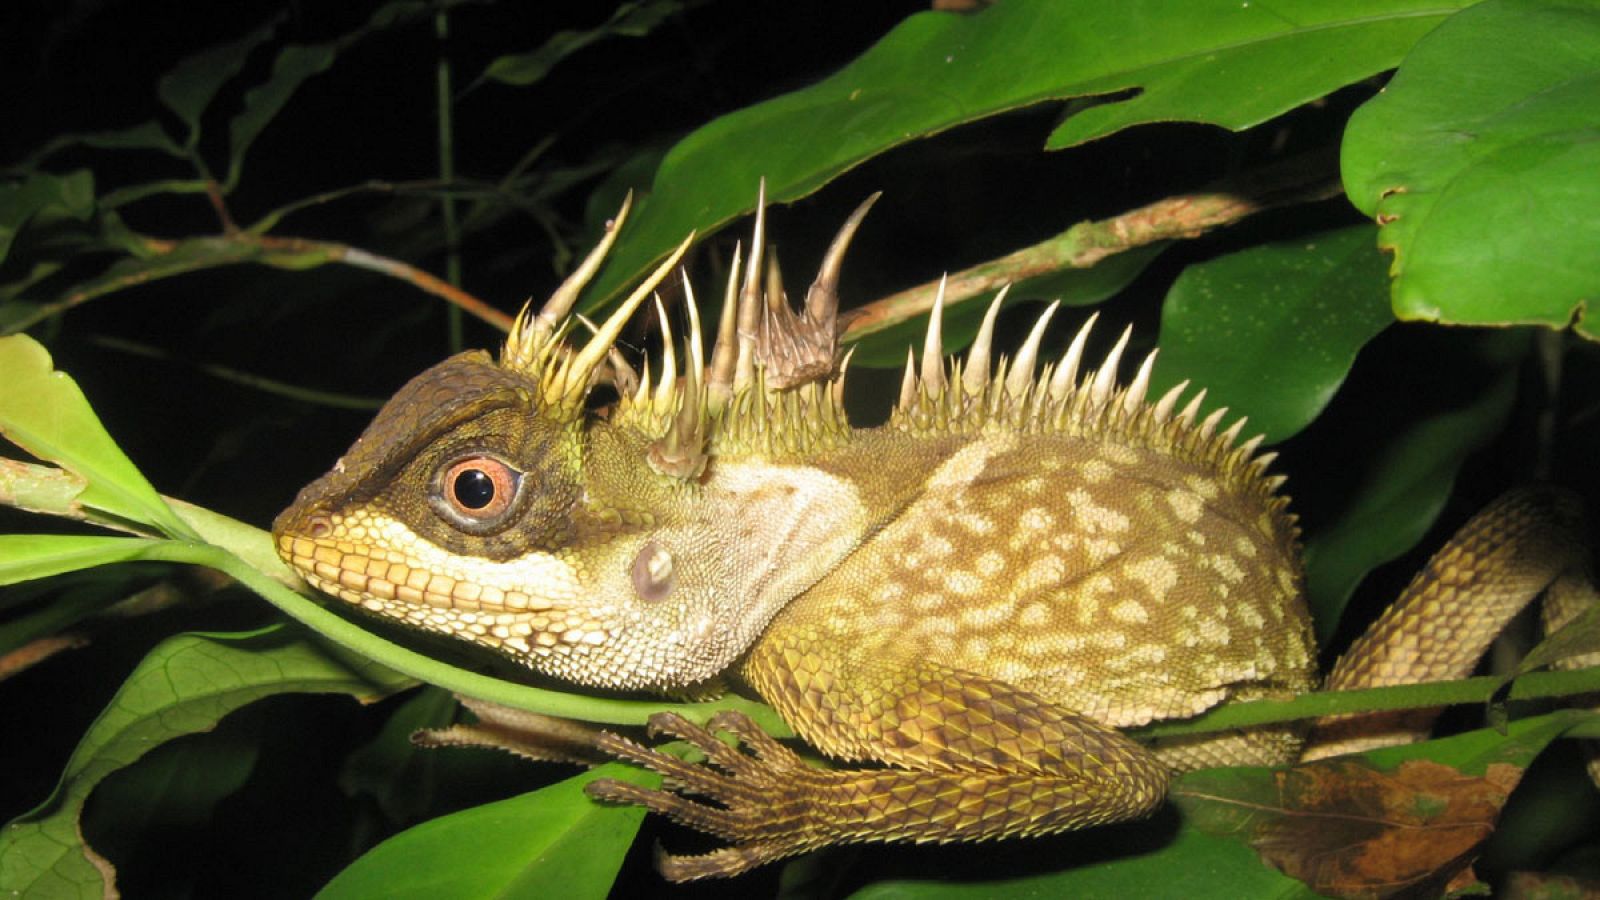 Acanthosaura phuketensis, lagartija encontrada en una de las pocas zonas boscosas que quedan en la popular isla tailandesa de Phuket.